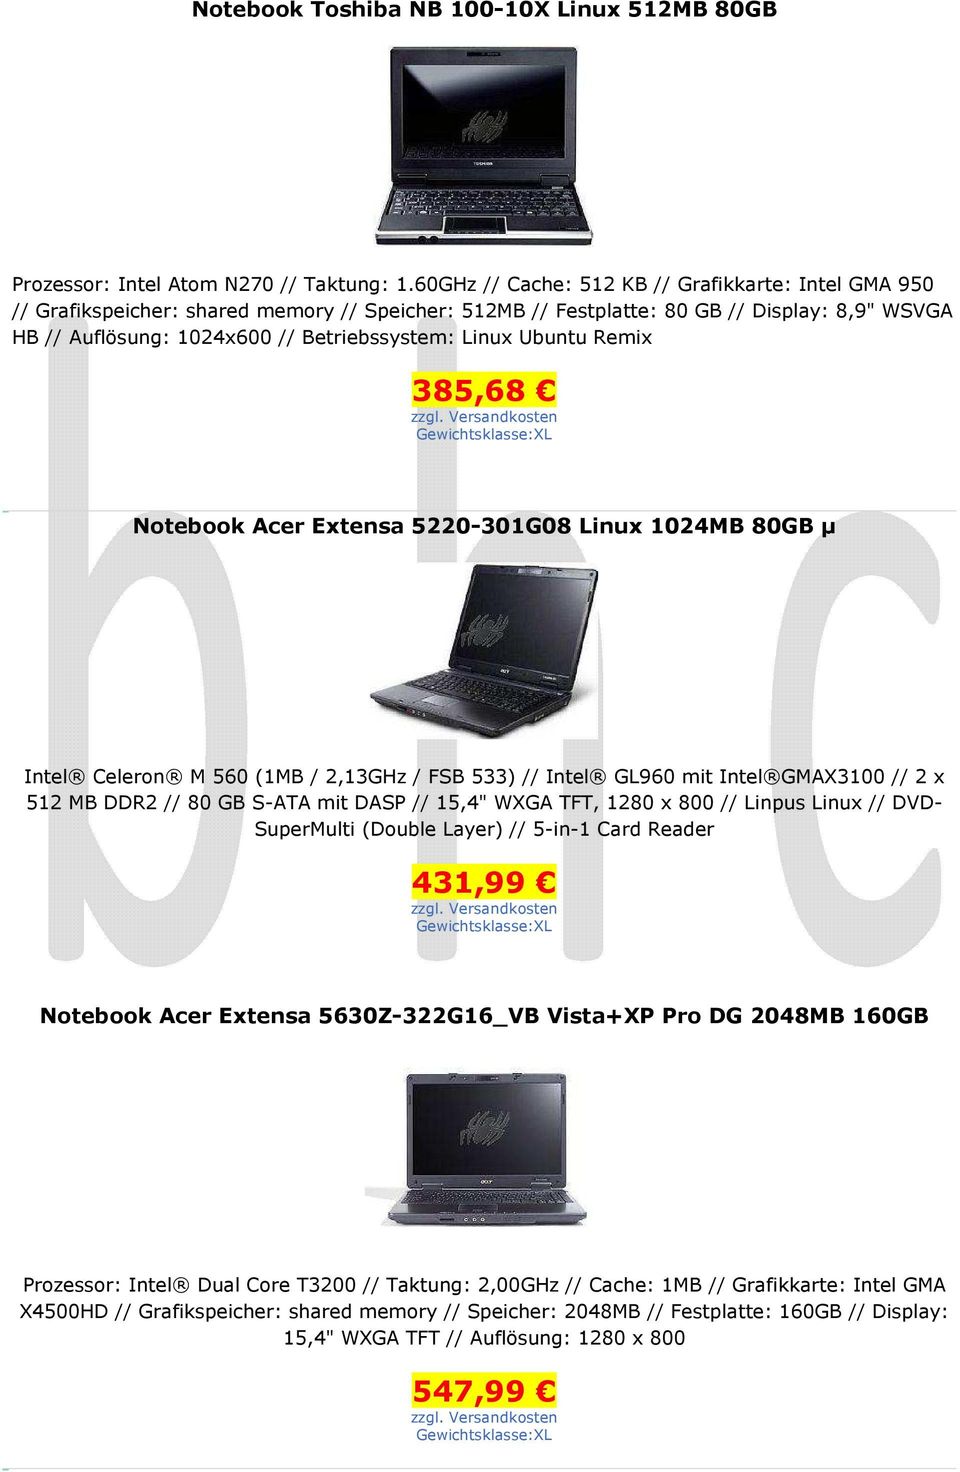 Ubuntu Remix 385,68 Notebook Acer Extensa 5220-301G08 Linux 1024MB 80GB µ Intel Celeron M 560 (1MB / 2,13GHz / FSB 533) // Intel GL960 mit Intel GMAX3100 // 2 x 512 MB DDR2 // 80 GB S-ATA mit DASP //